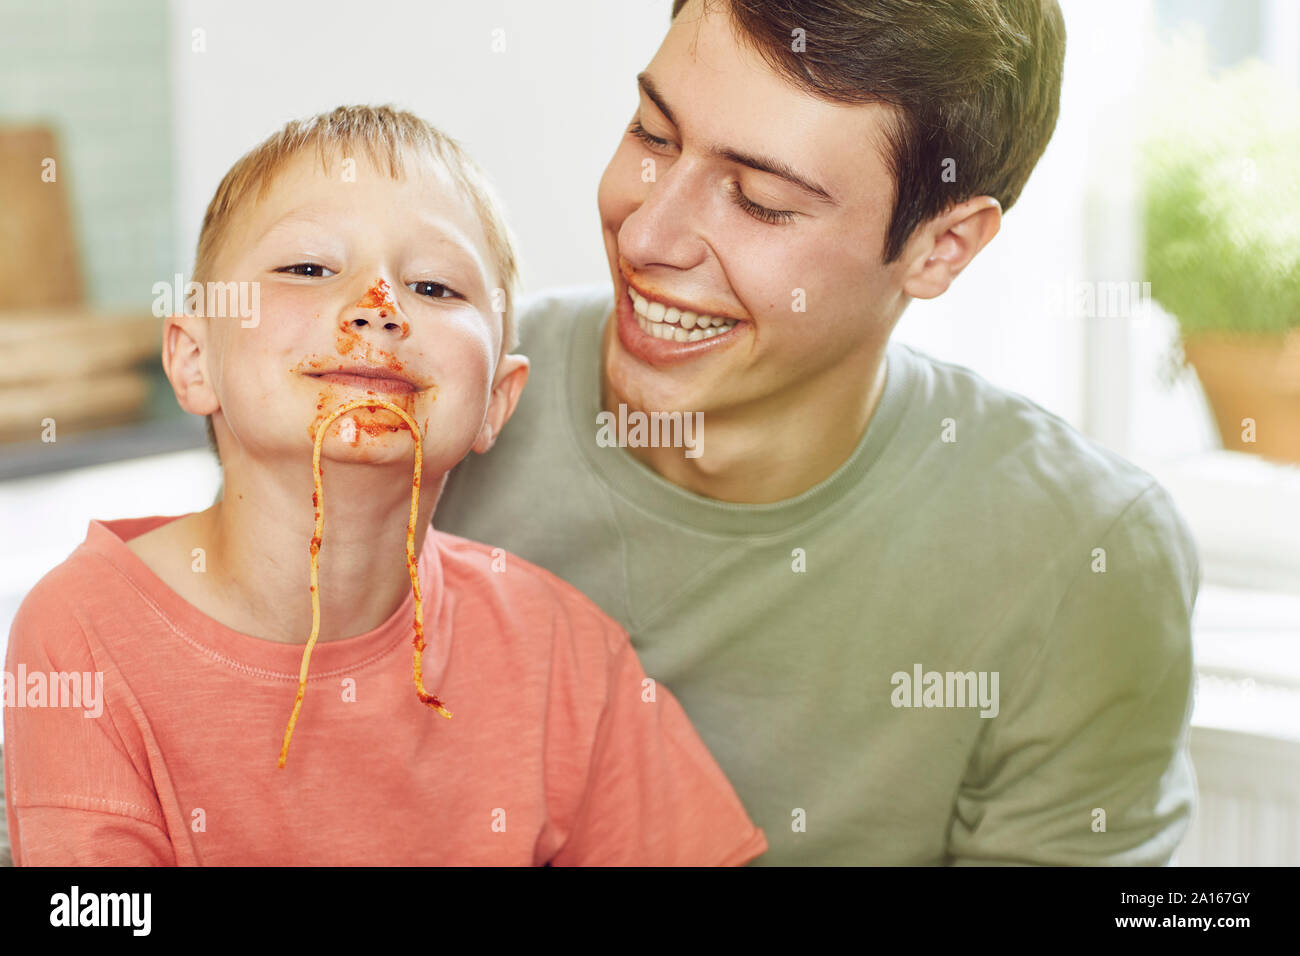 Kleiner Bruder mit Gesicht voller Tomatensauce, auf den Schoß von seinem großen Bruder Stockfoto